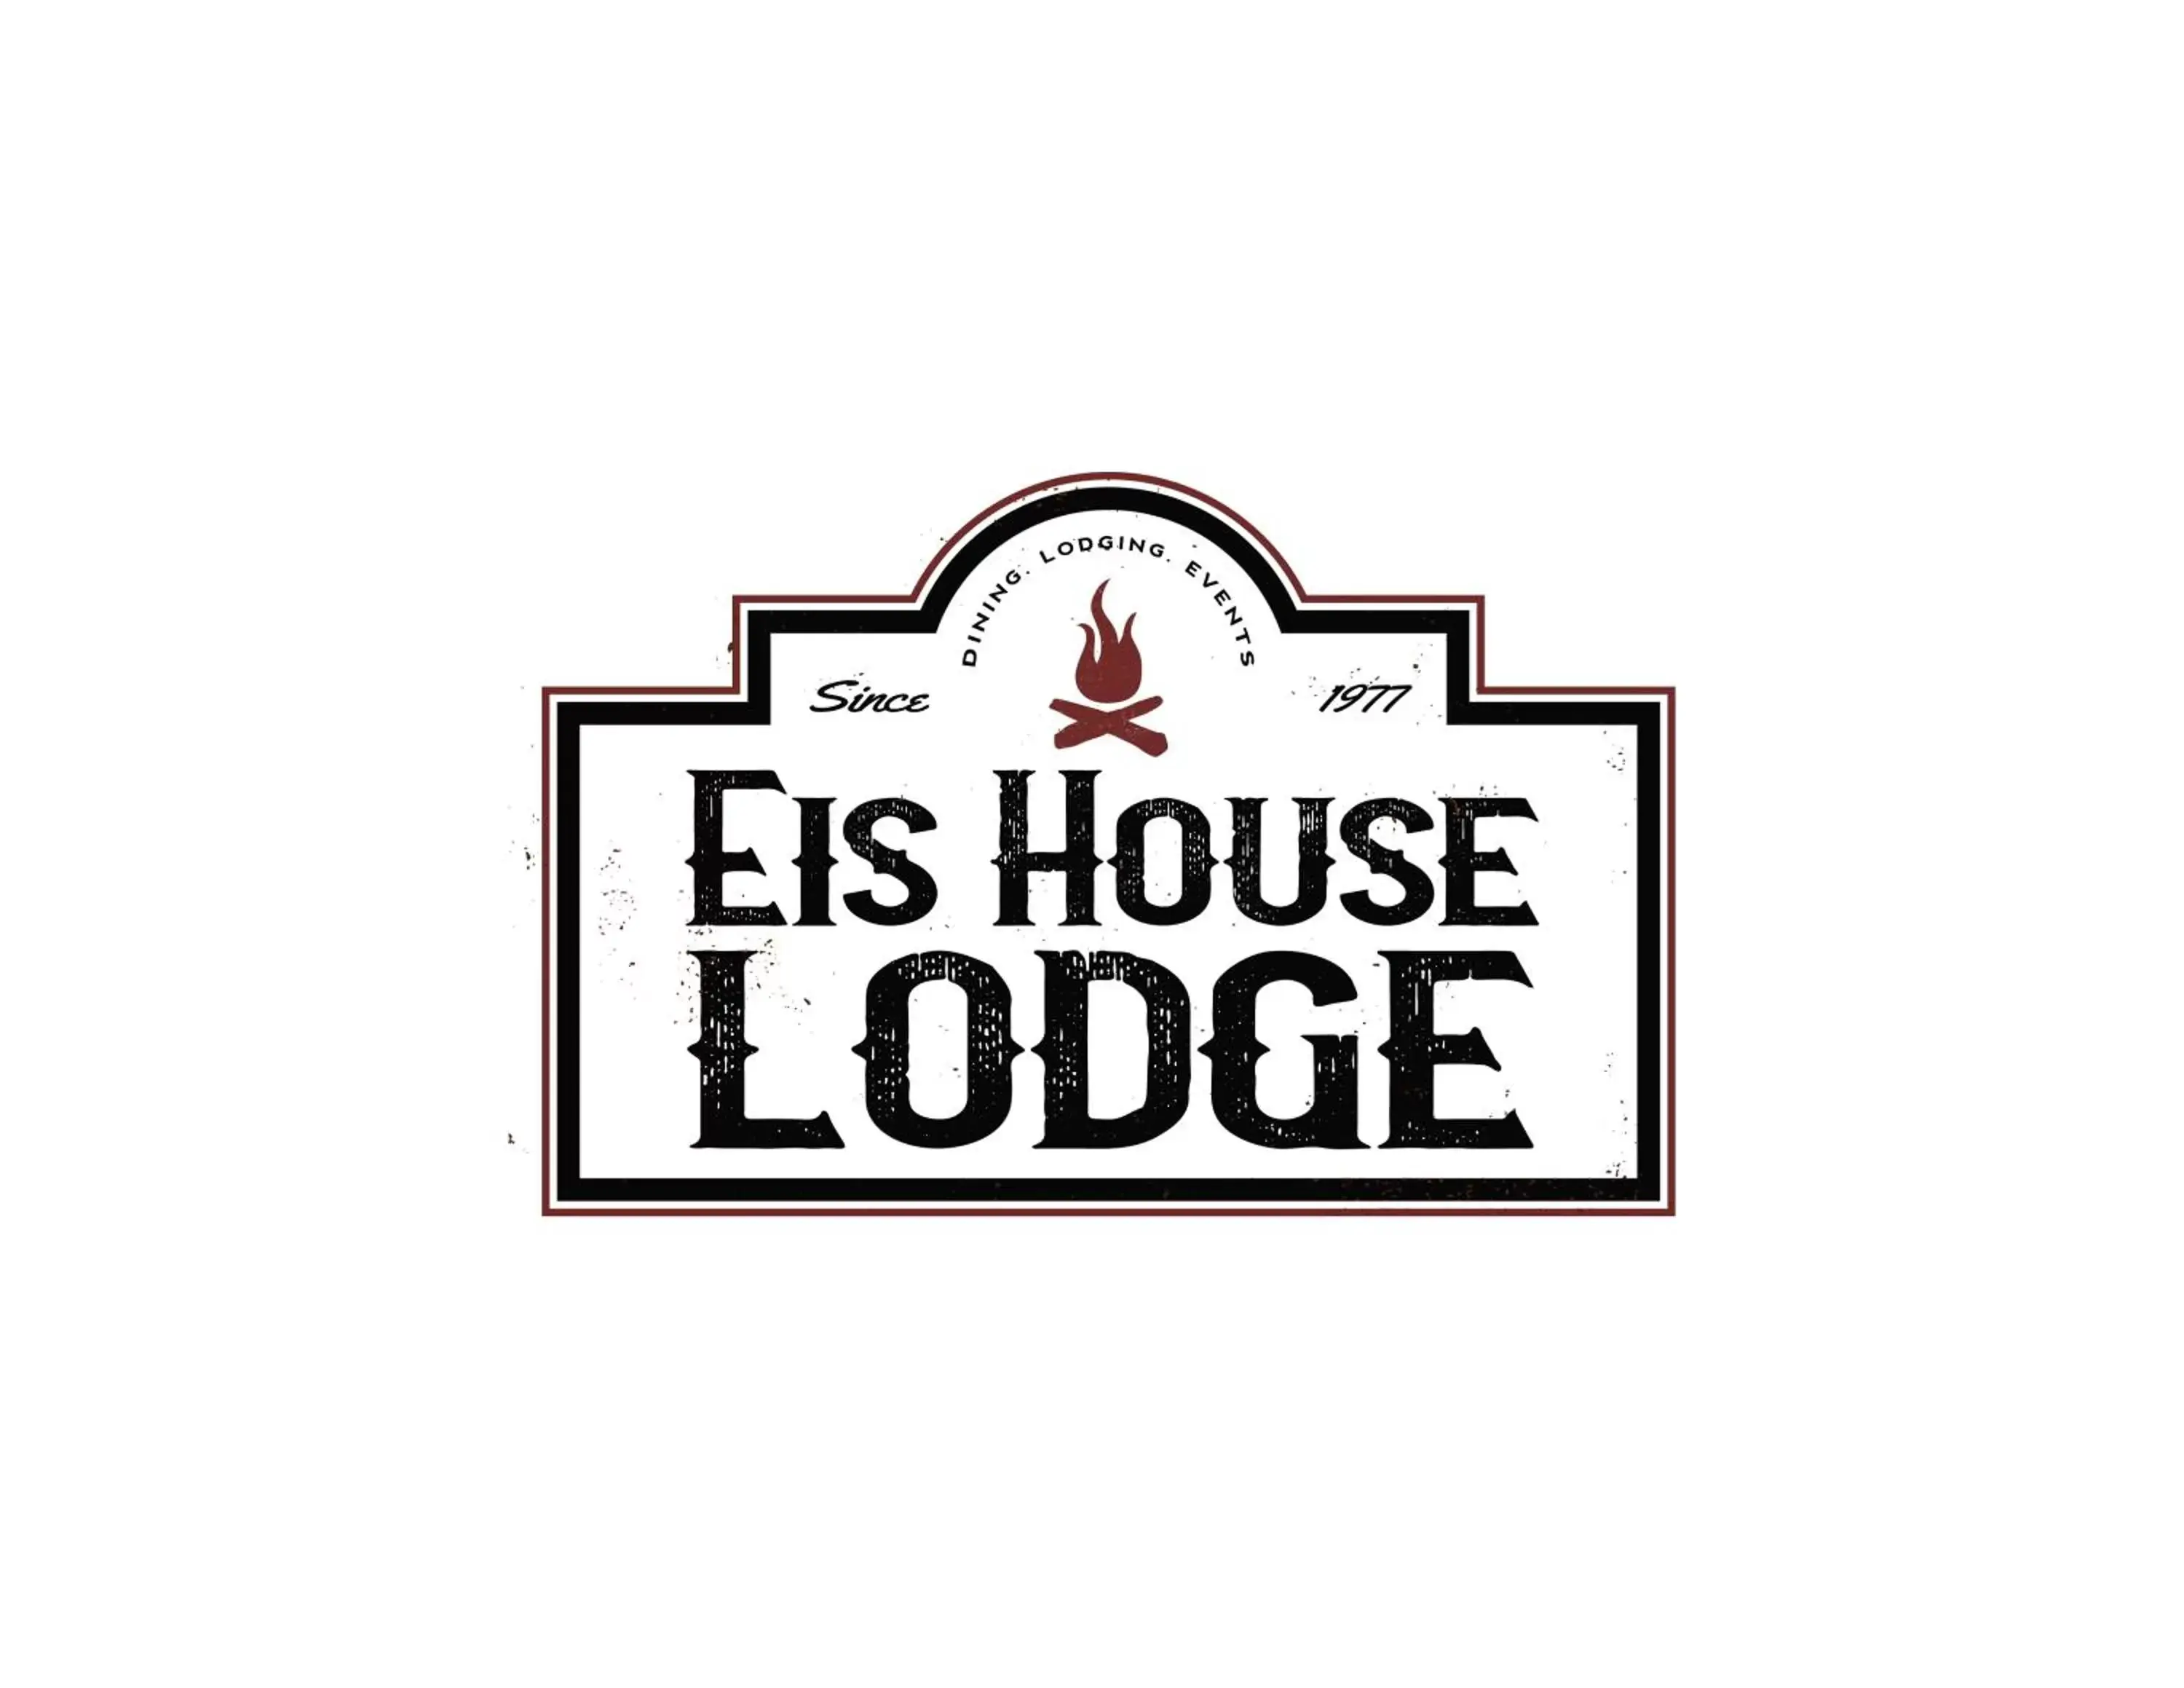 The Eis House